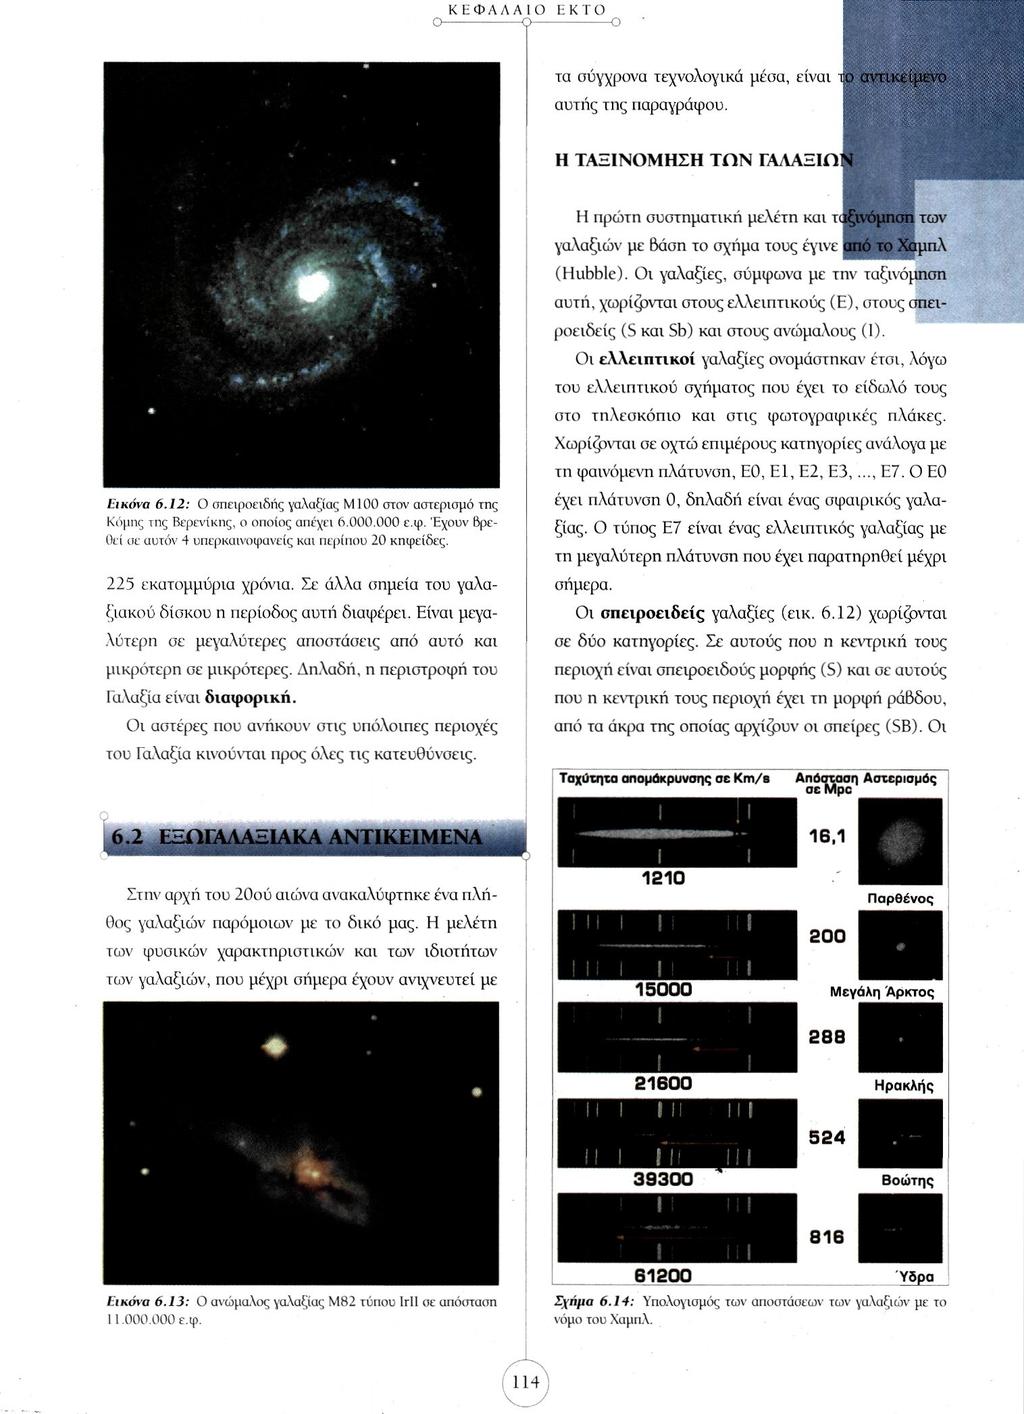 τα σύγχρονα τεχνολογικά μέσα, είναι το αντικείμενο αυτής της παραγράφου. Η ΤΑΞΙΝΟΜΗΣΗ ΤΩΝ ΓΑΛΑΞΙΩΝ Εικόνα 6.12: Ο σπειροειδής γαλαξίας Μ100 στον αστερισμό της Κόμης της Βερενίκης, ο οποίος απέχει 6.